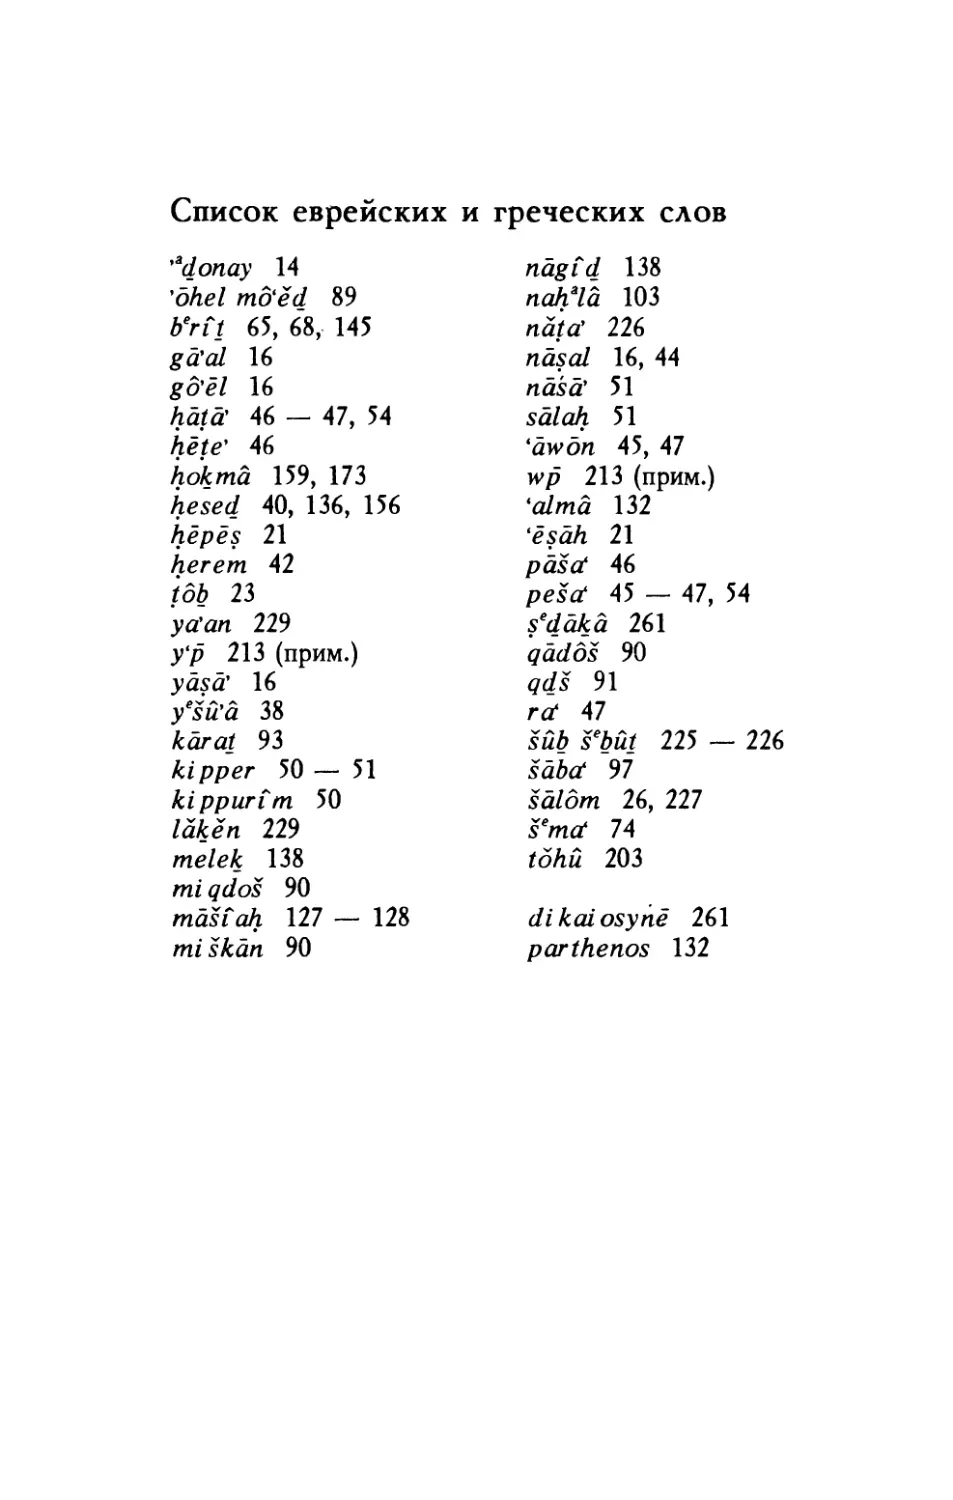 Список еврейских и греческих слов